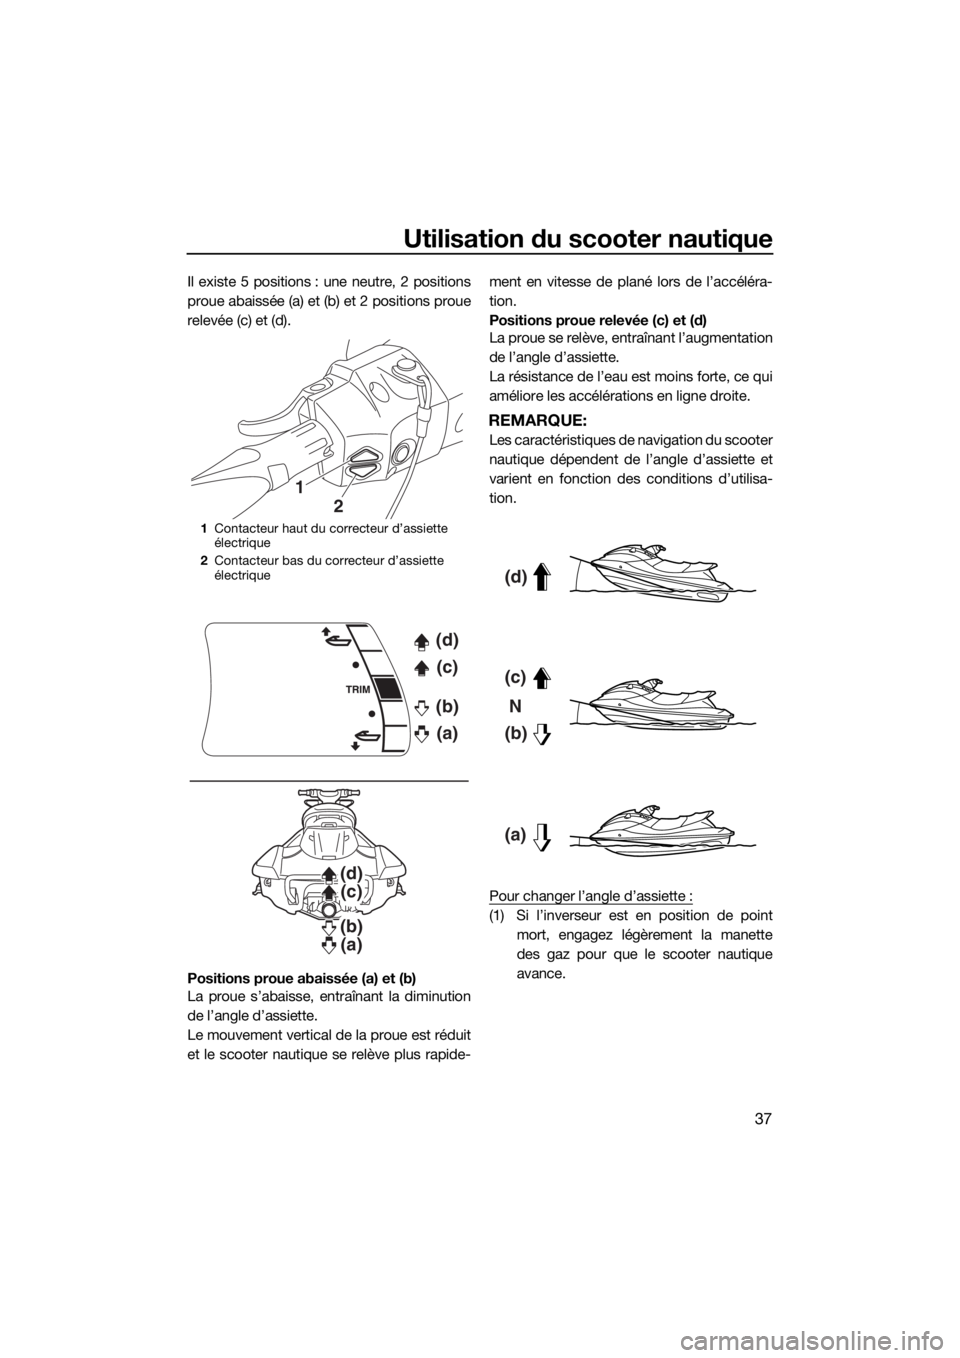 YAMAHA FX SVHO 2016  Notices Demploi (in French) Utilisation du scooter nautique
37
Il existe 5 positions : une neutre, 2 positions
proue abaissée (a) et (b) et 2 positions proue
relevée (c) et (d).
Positions proue abaissée (a) et (b)
La proue s�